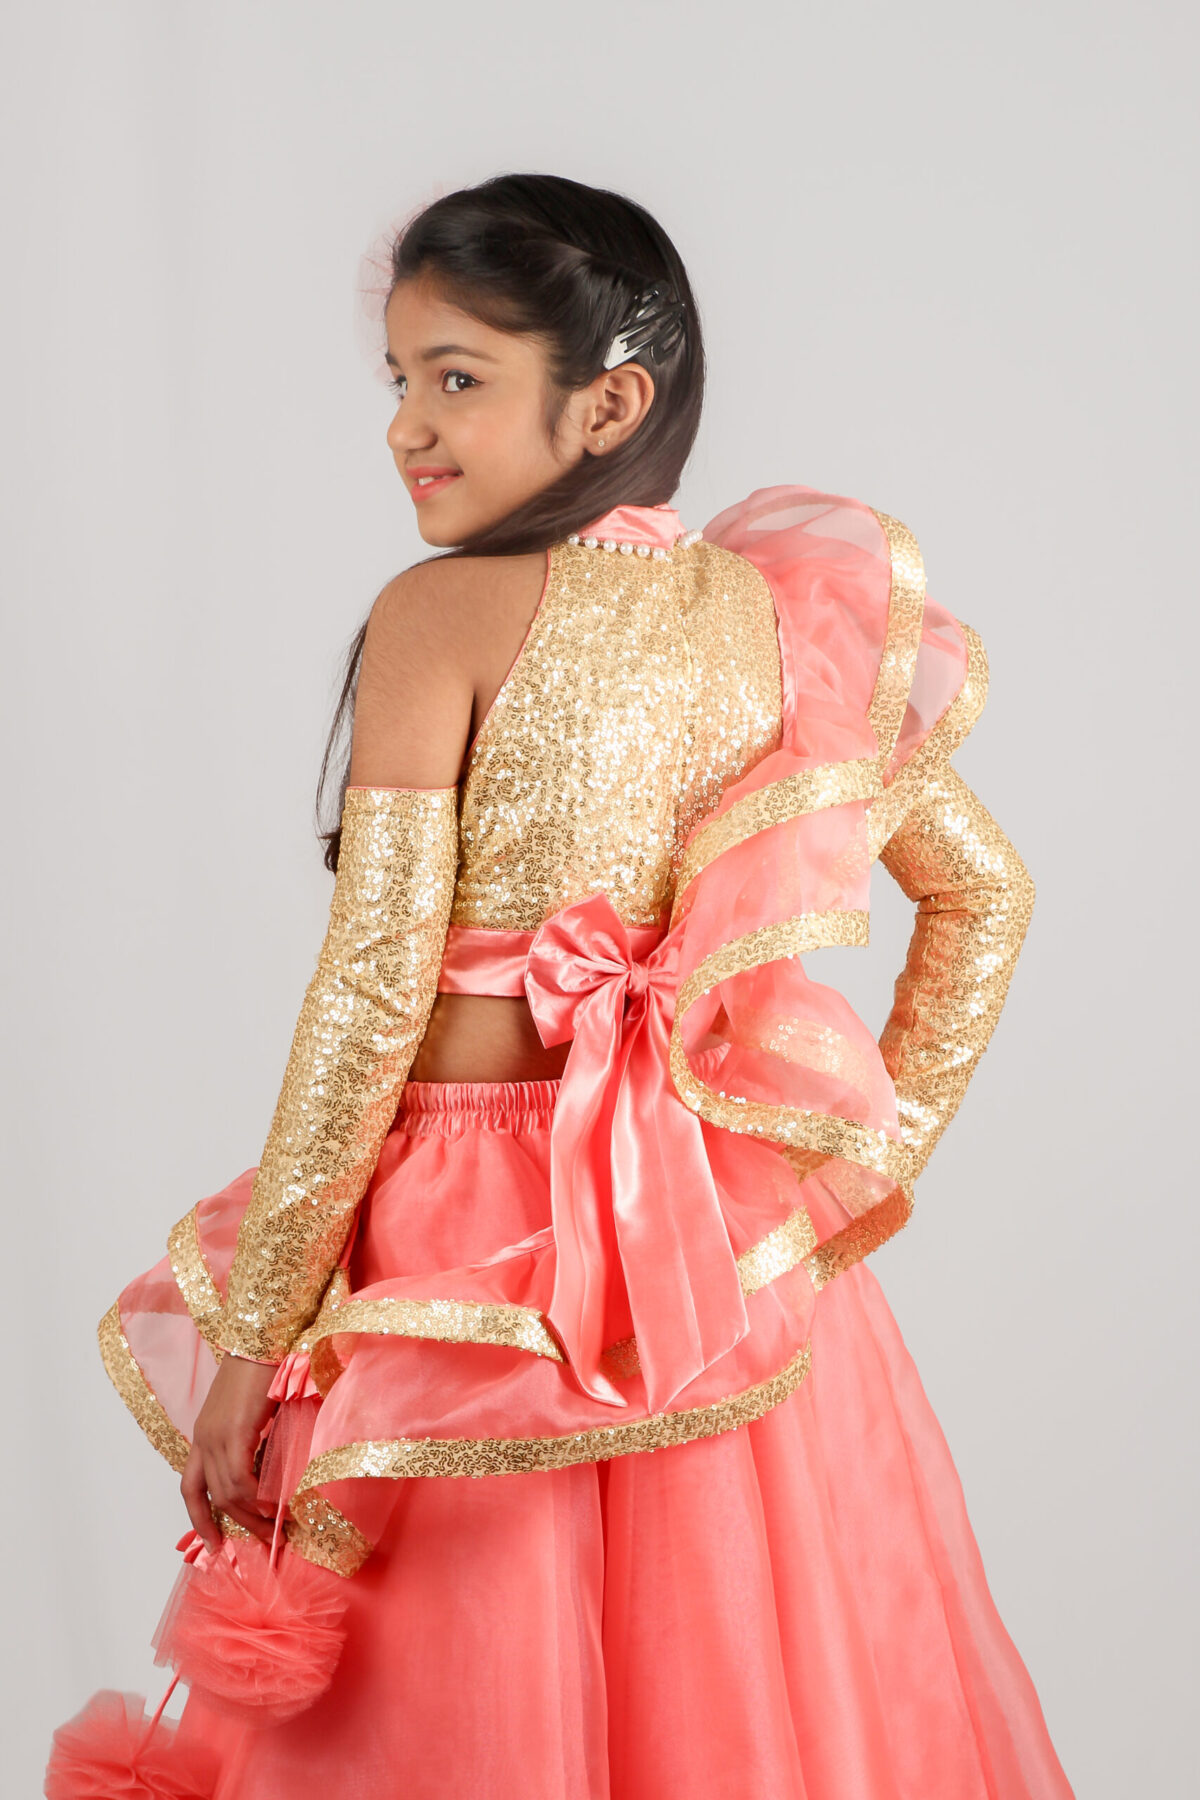 IMG 9972 2 scaled Blush Pink Princess style Lehenga Choli with Potli Bag